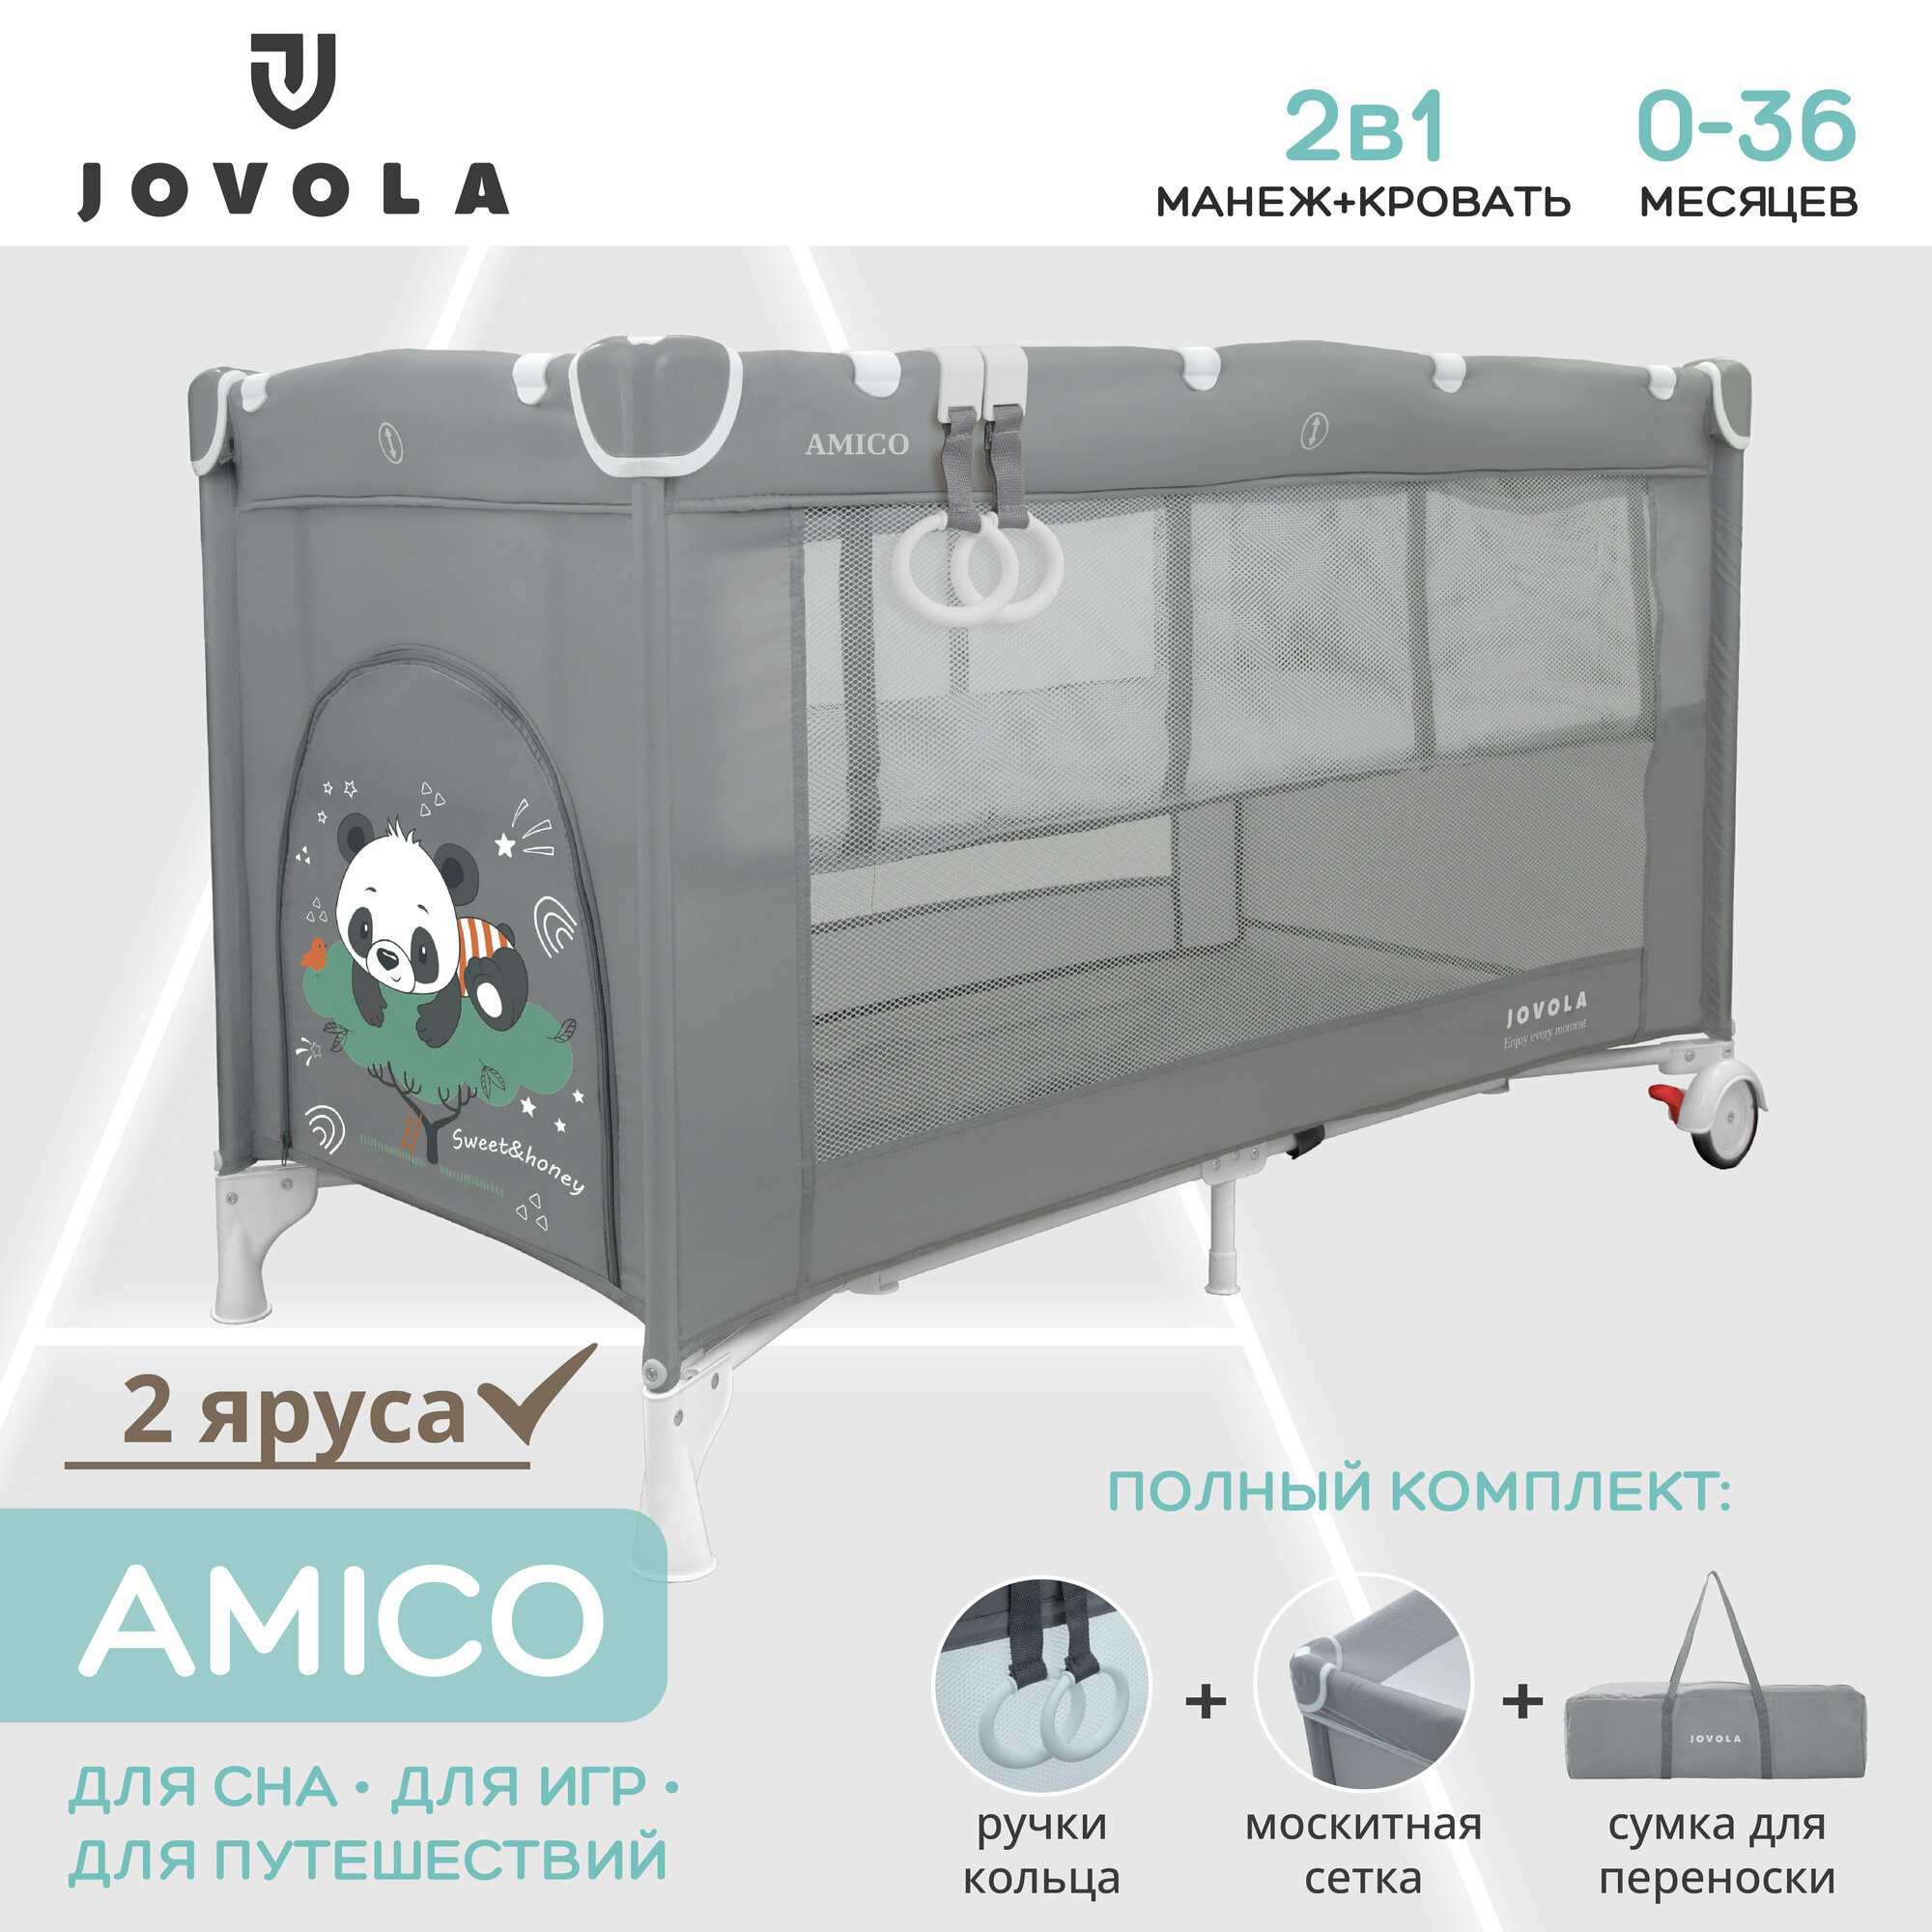 Манеж-кровать JOVOLA AMICO, 0-36 мес, складной, с аксессуарами, 2 уровня, серый